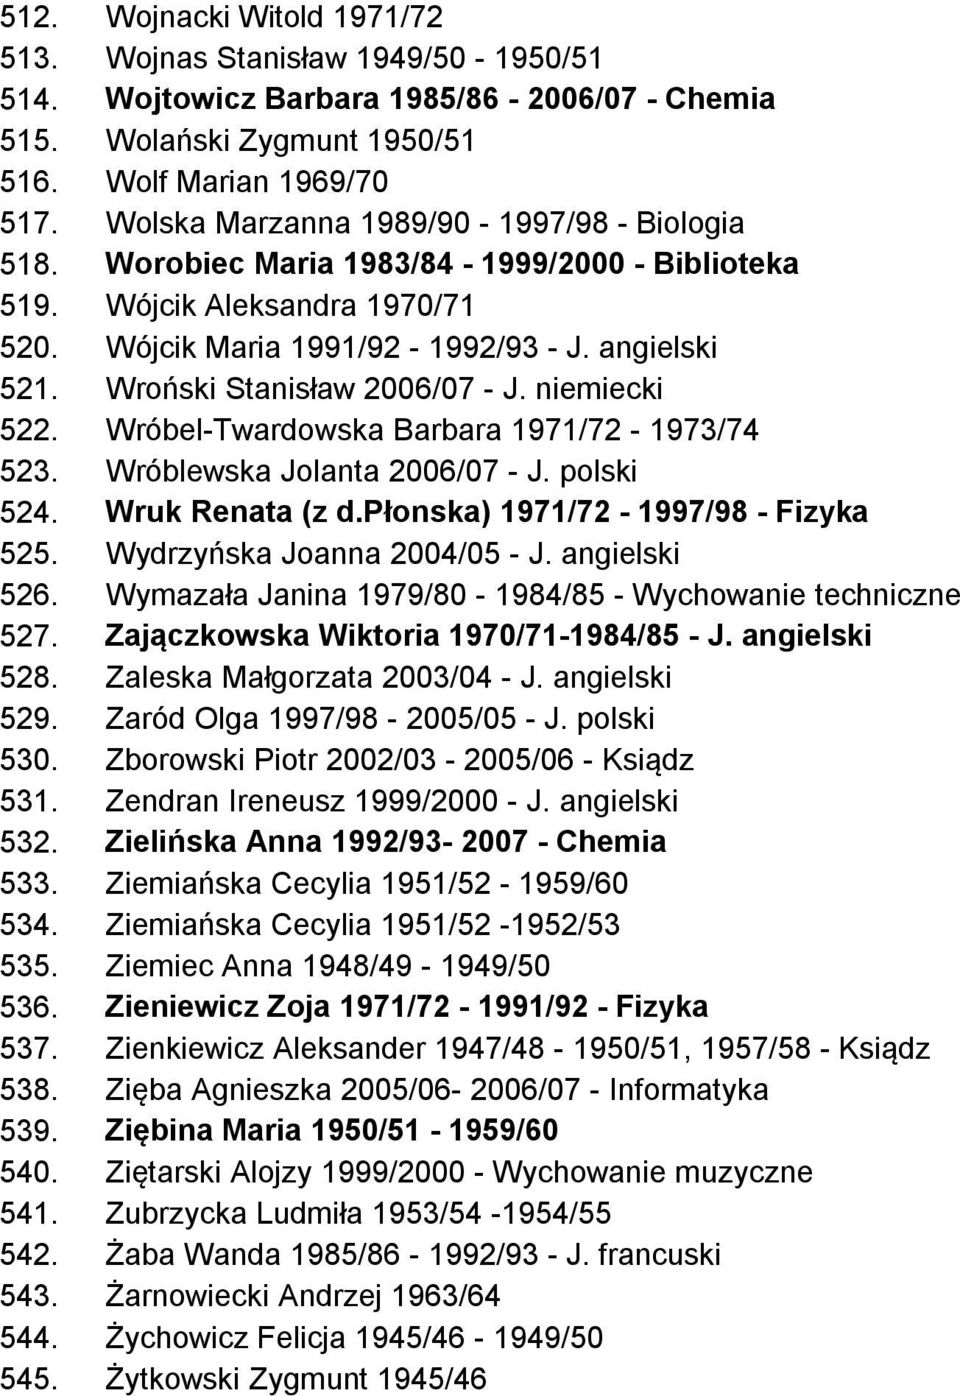 Wroński Stanisław 2006/07 - J. niemiecki 522. Wróbel-Twardowska Barbara 1971/72-1973/74 523. Wróblewska Jolanta 2006/07 - J. polski 524. Wruk Renata (z d.płonska) 1971/72-1997/98 - Fizyka 525.